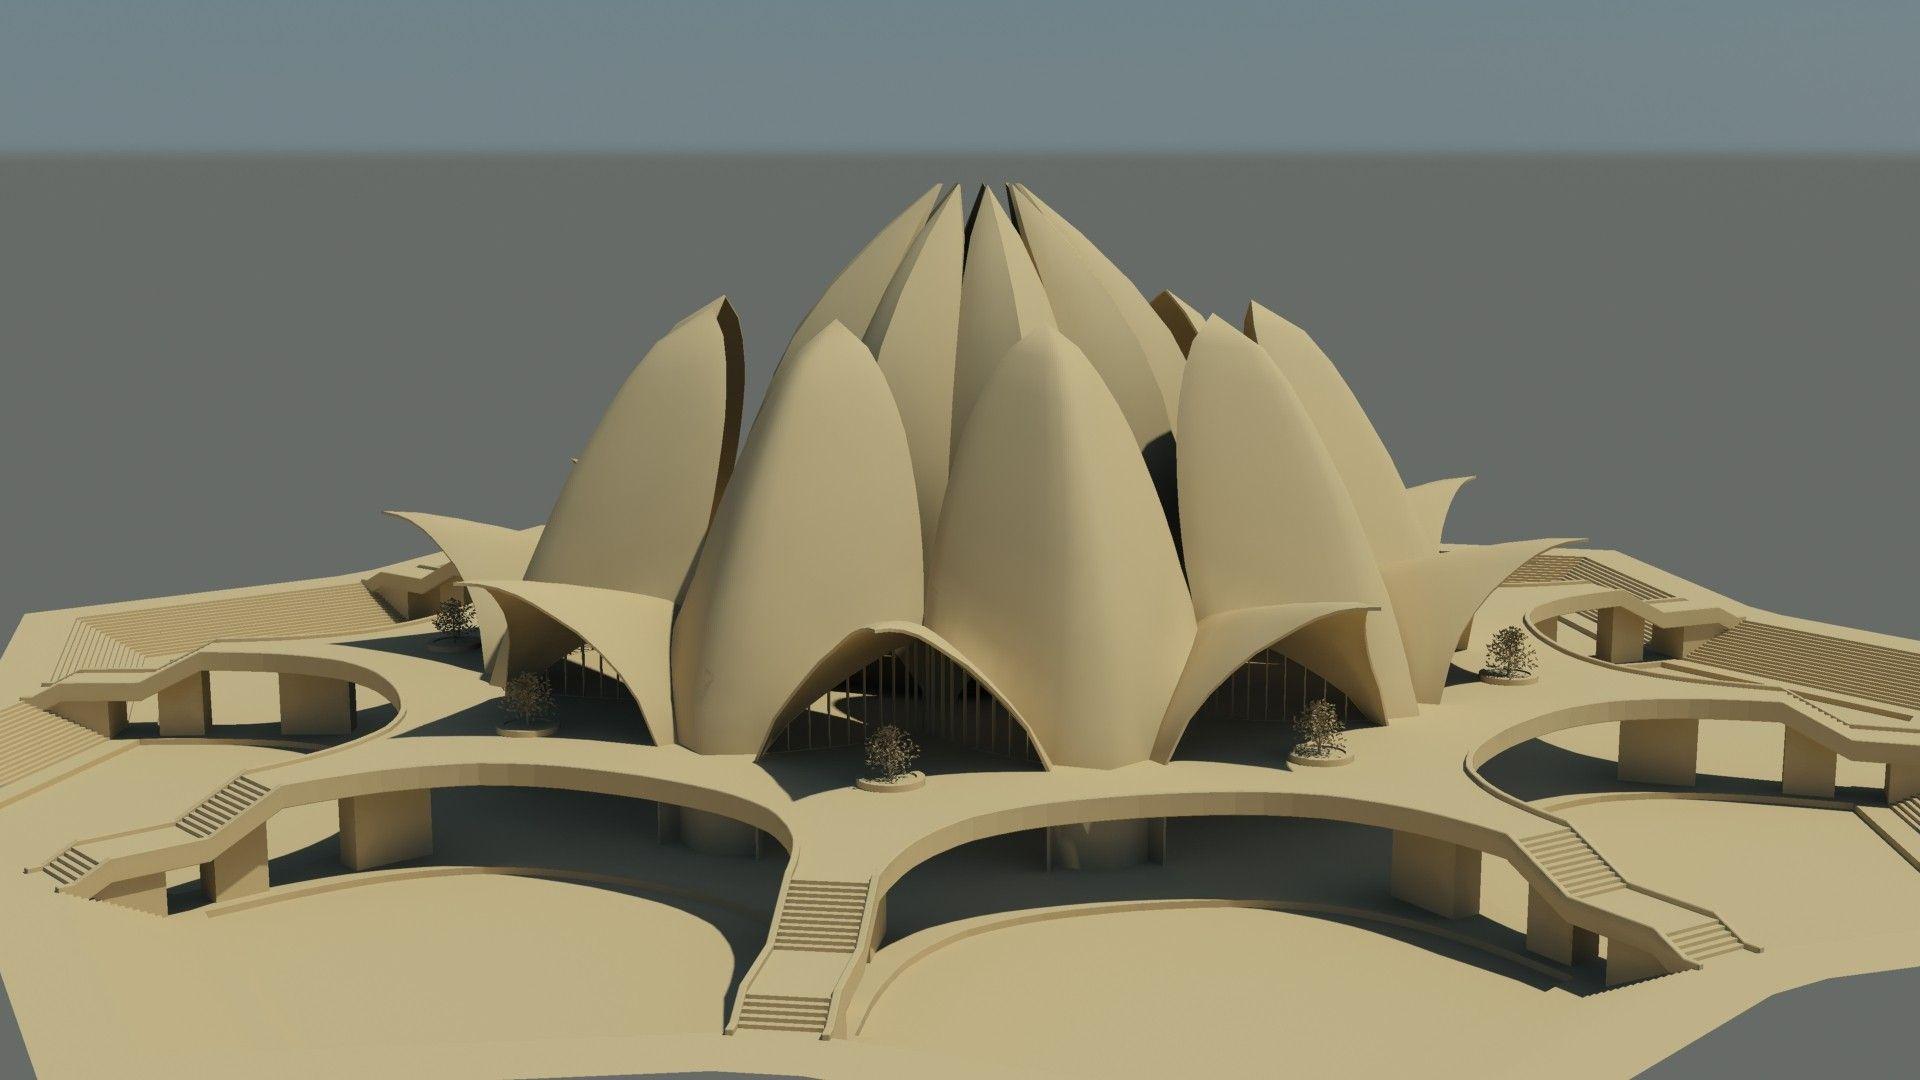 architecture religious temple render cgi new delhi india lotus